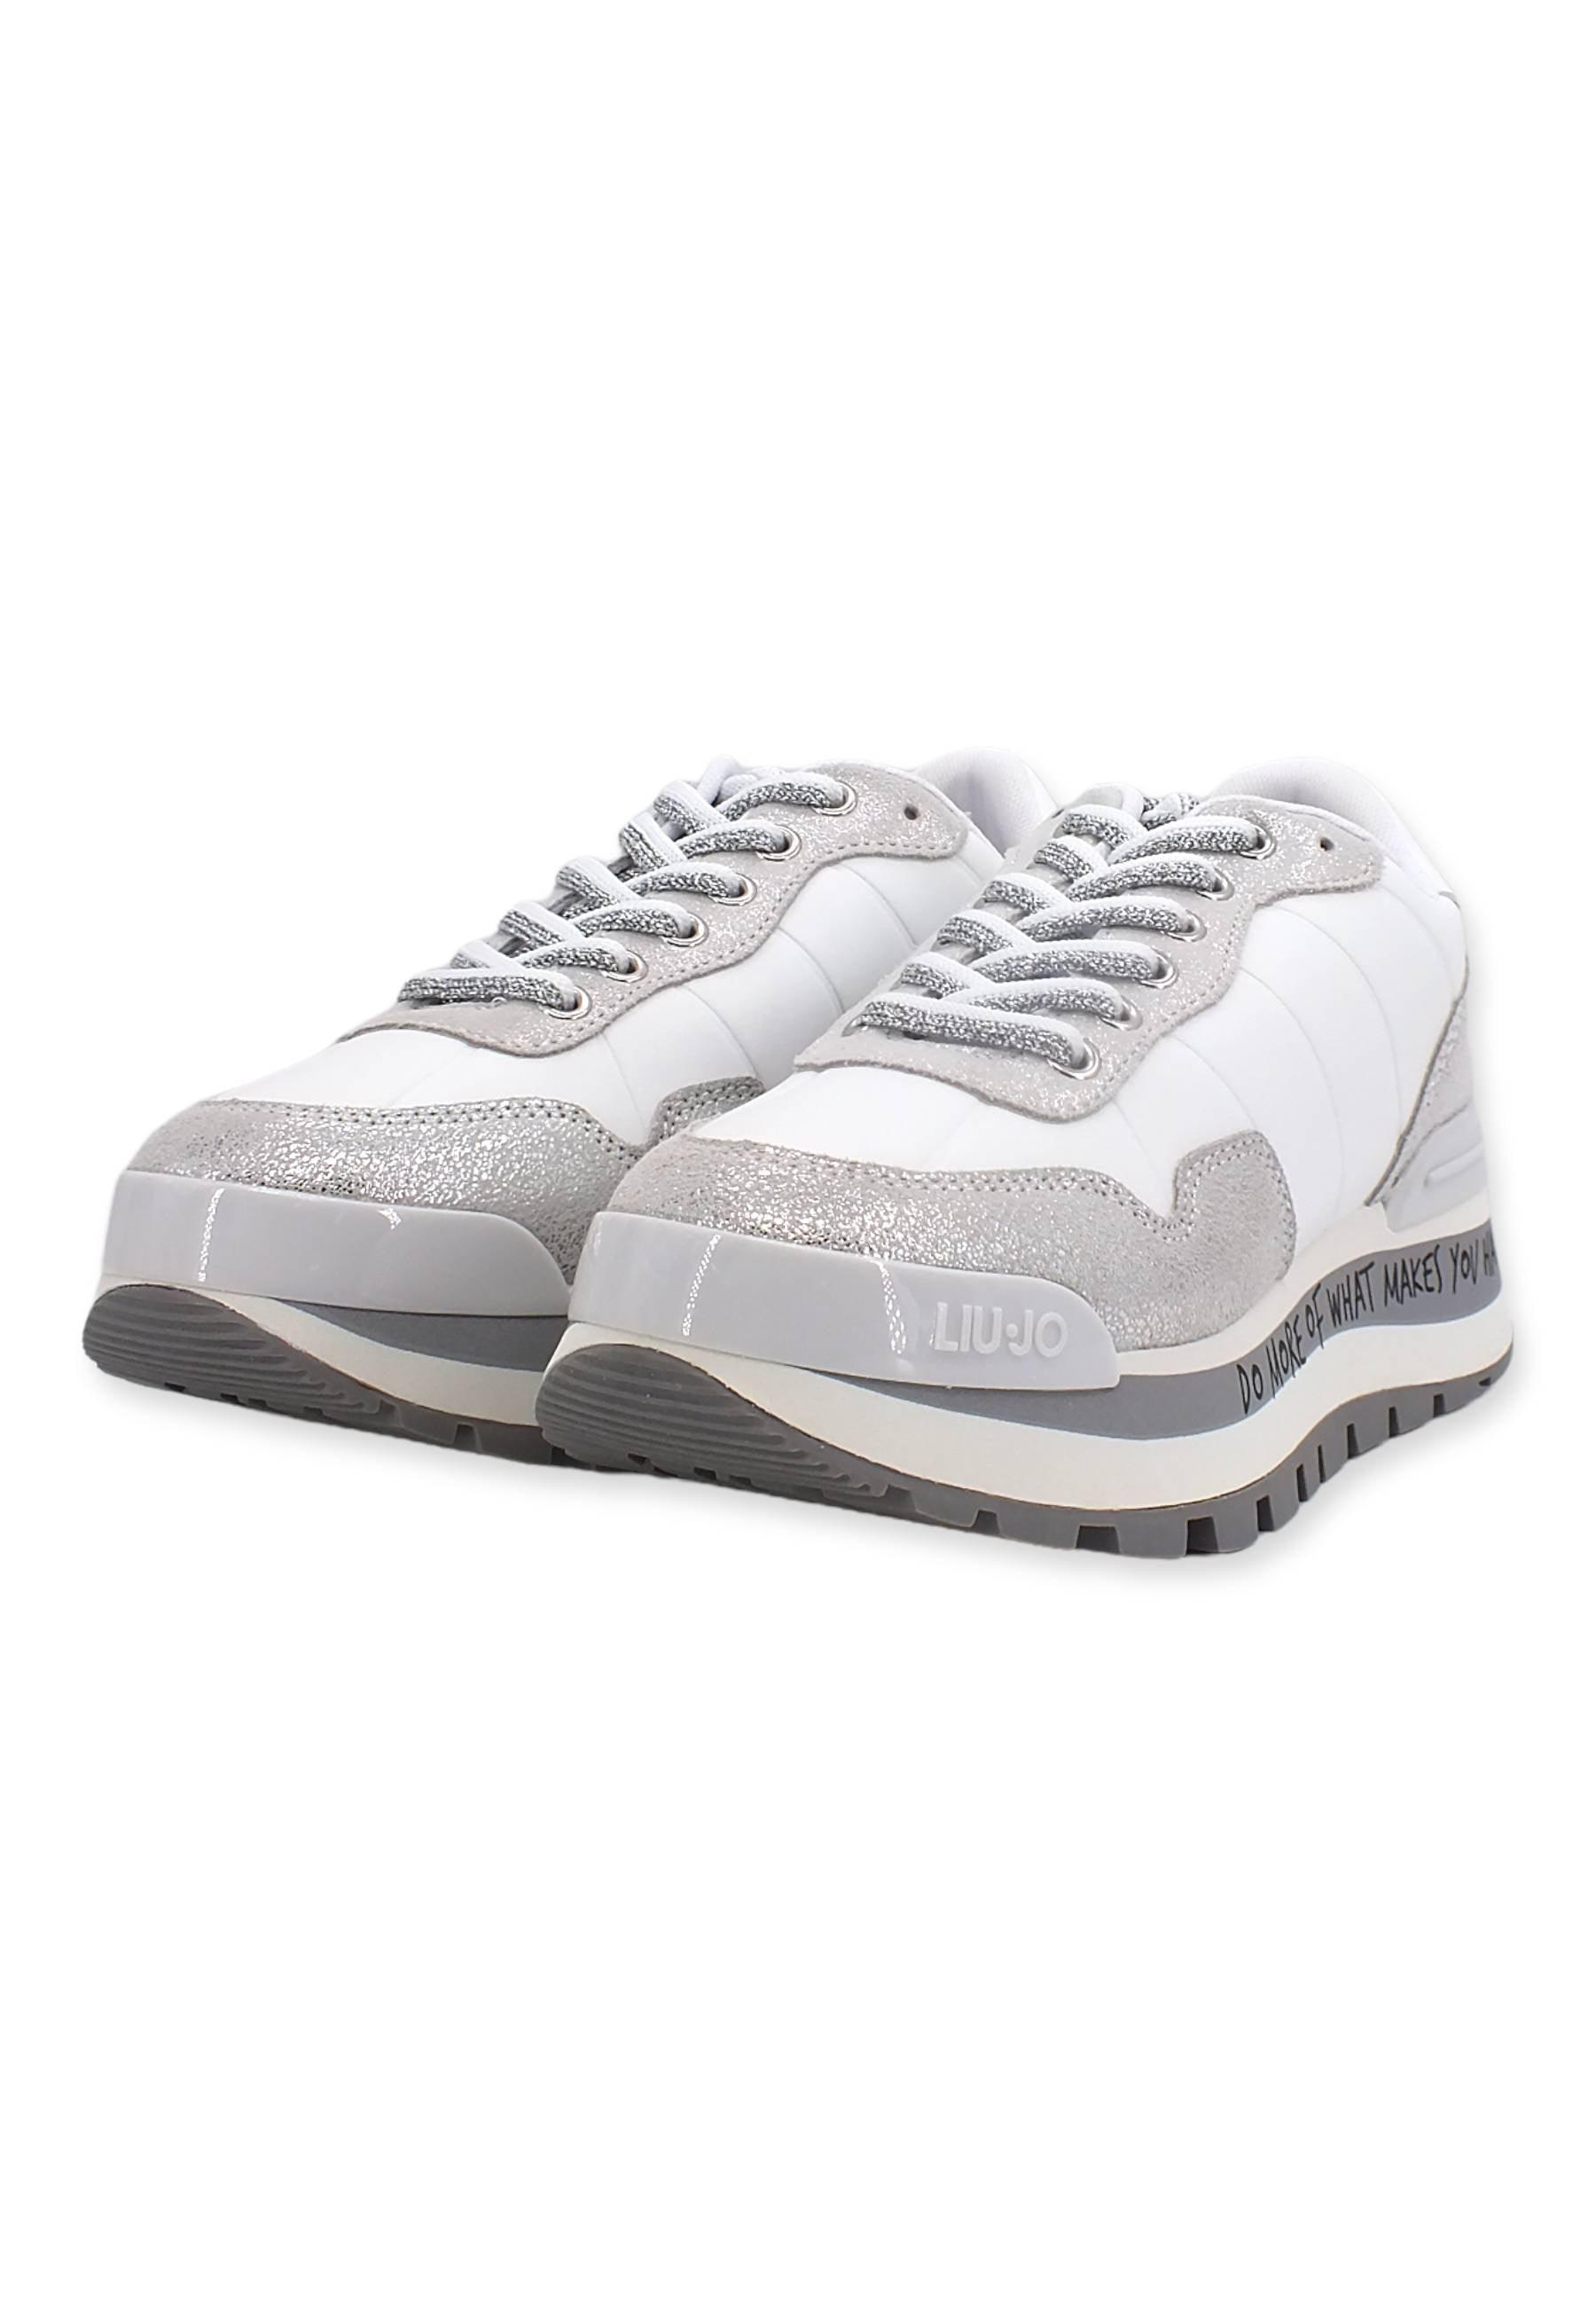 LIU JO Amazing 01 Sneaker Donna Metallic White BF2125PX263 - Sandrini Calzature e Abbigliamento